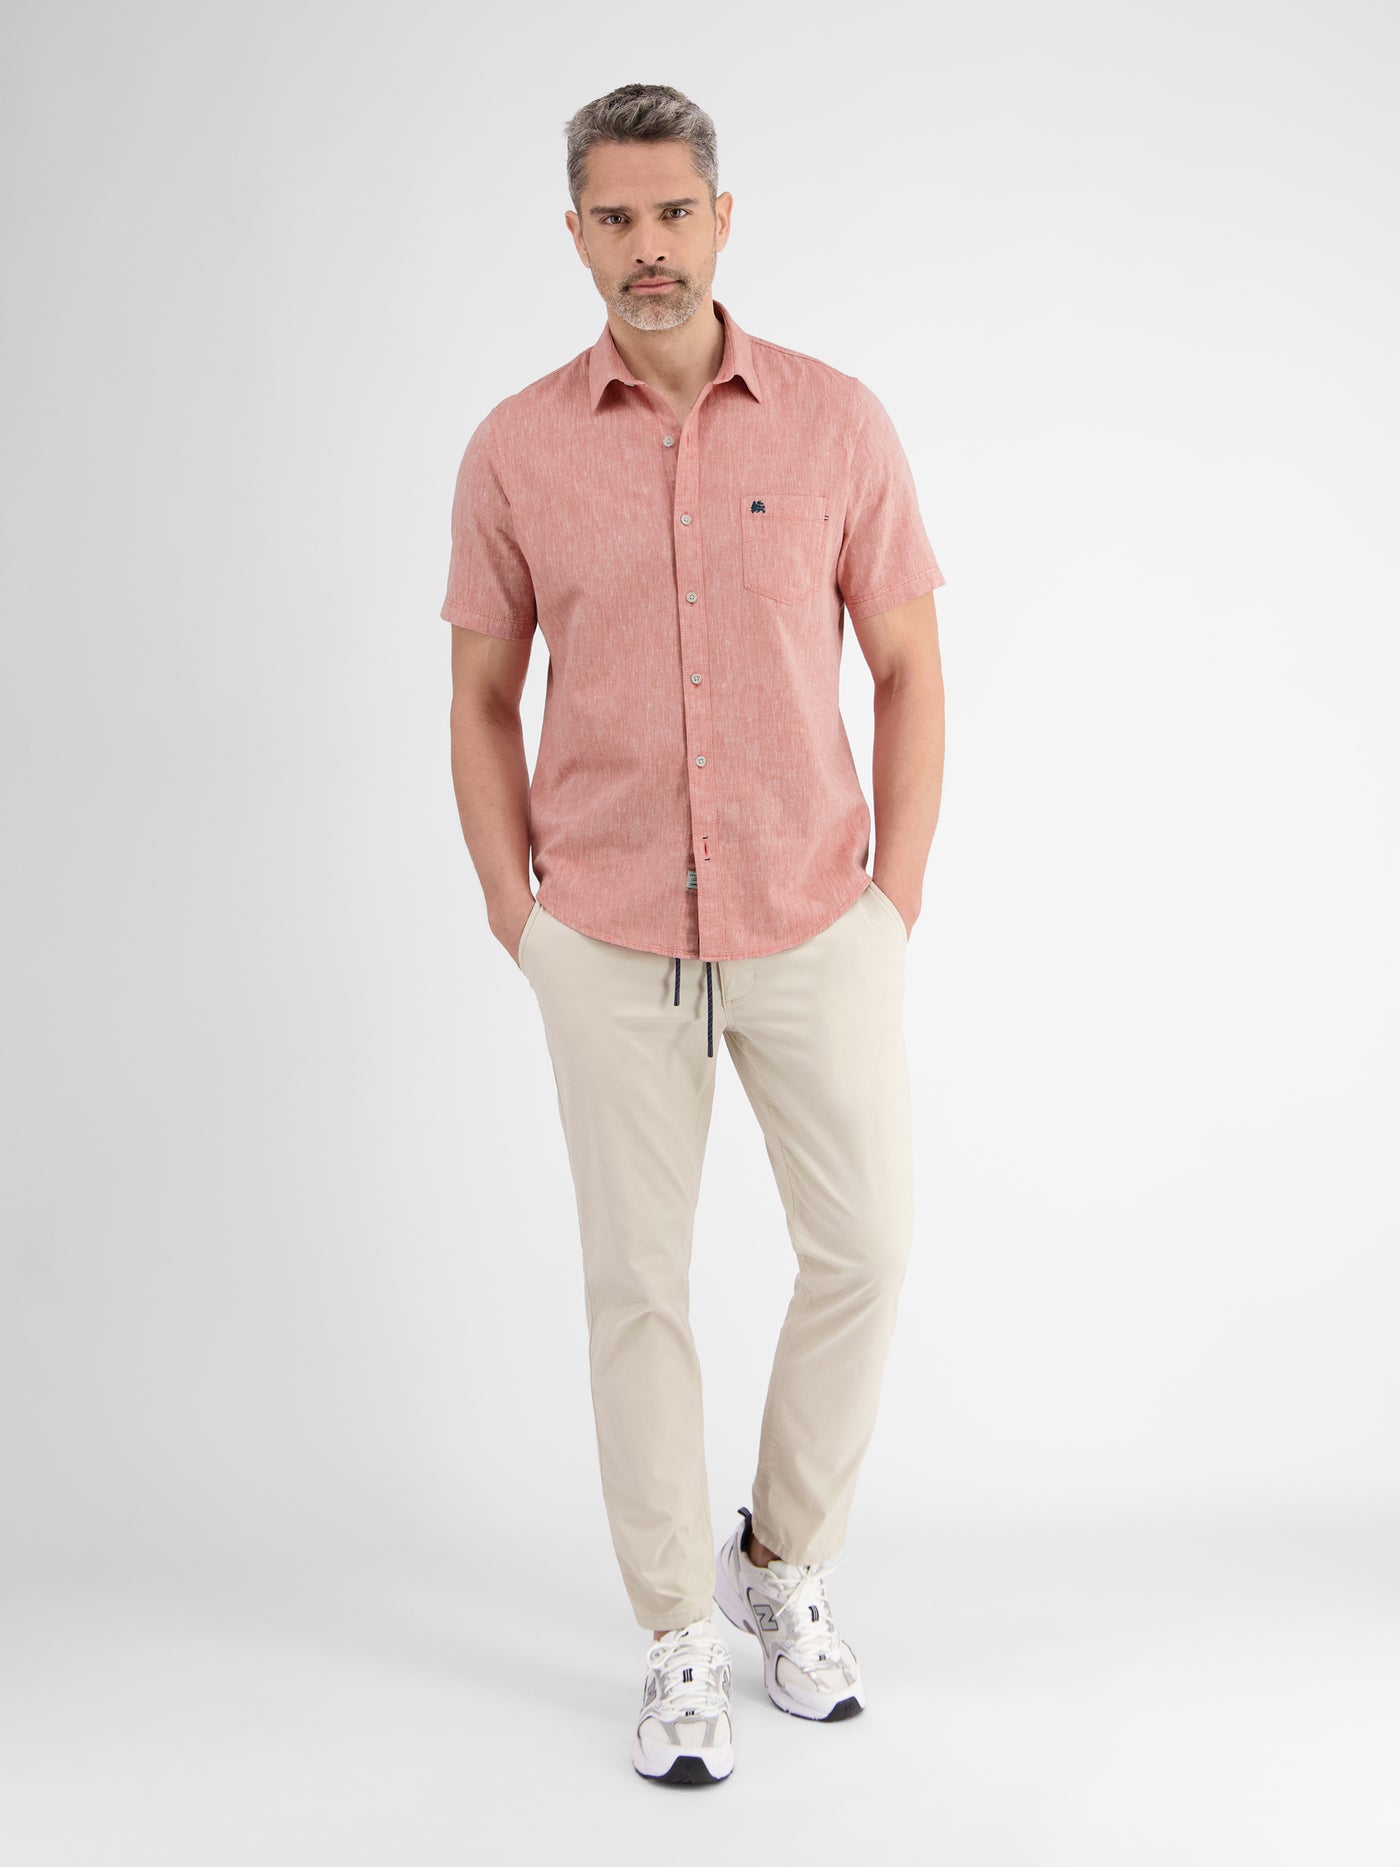 Casual cotton linen shirt, plain color